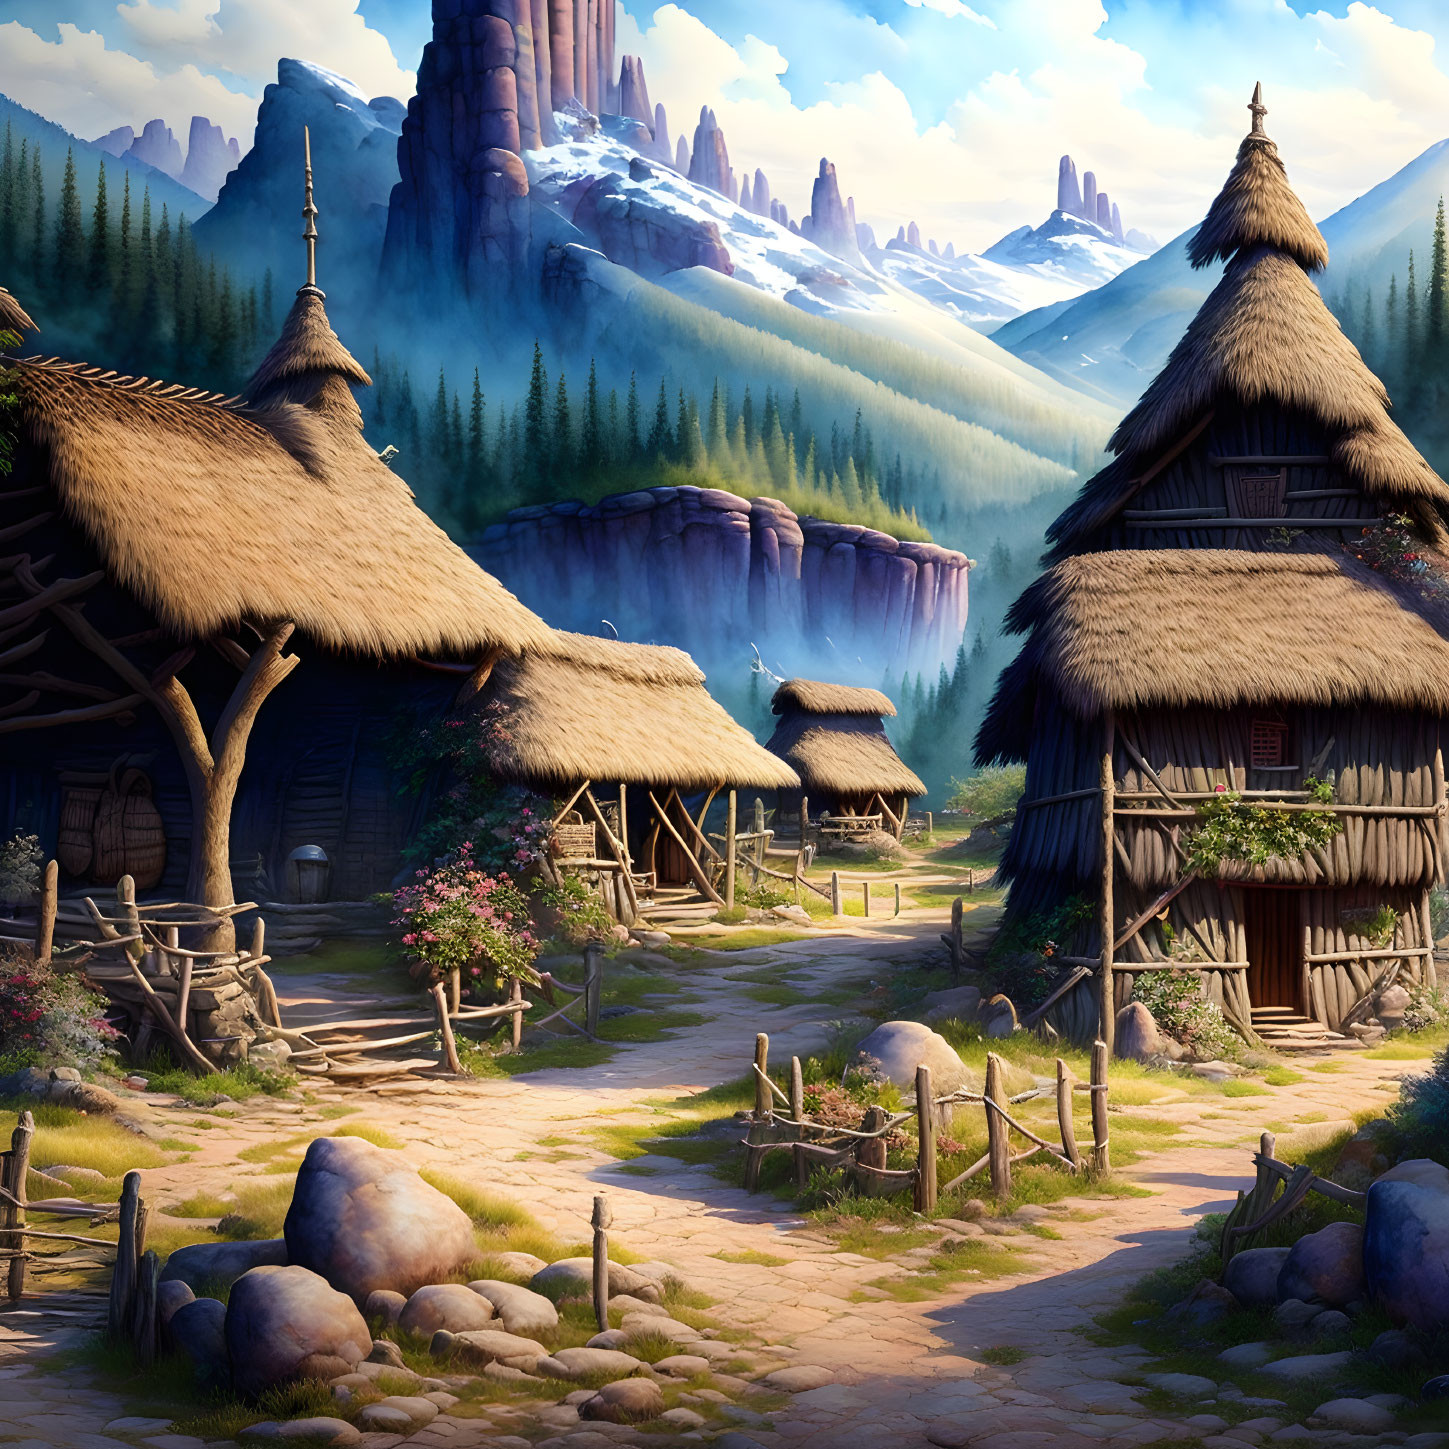 Prehistorical village